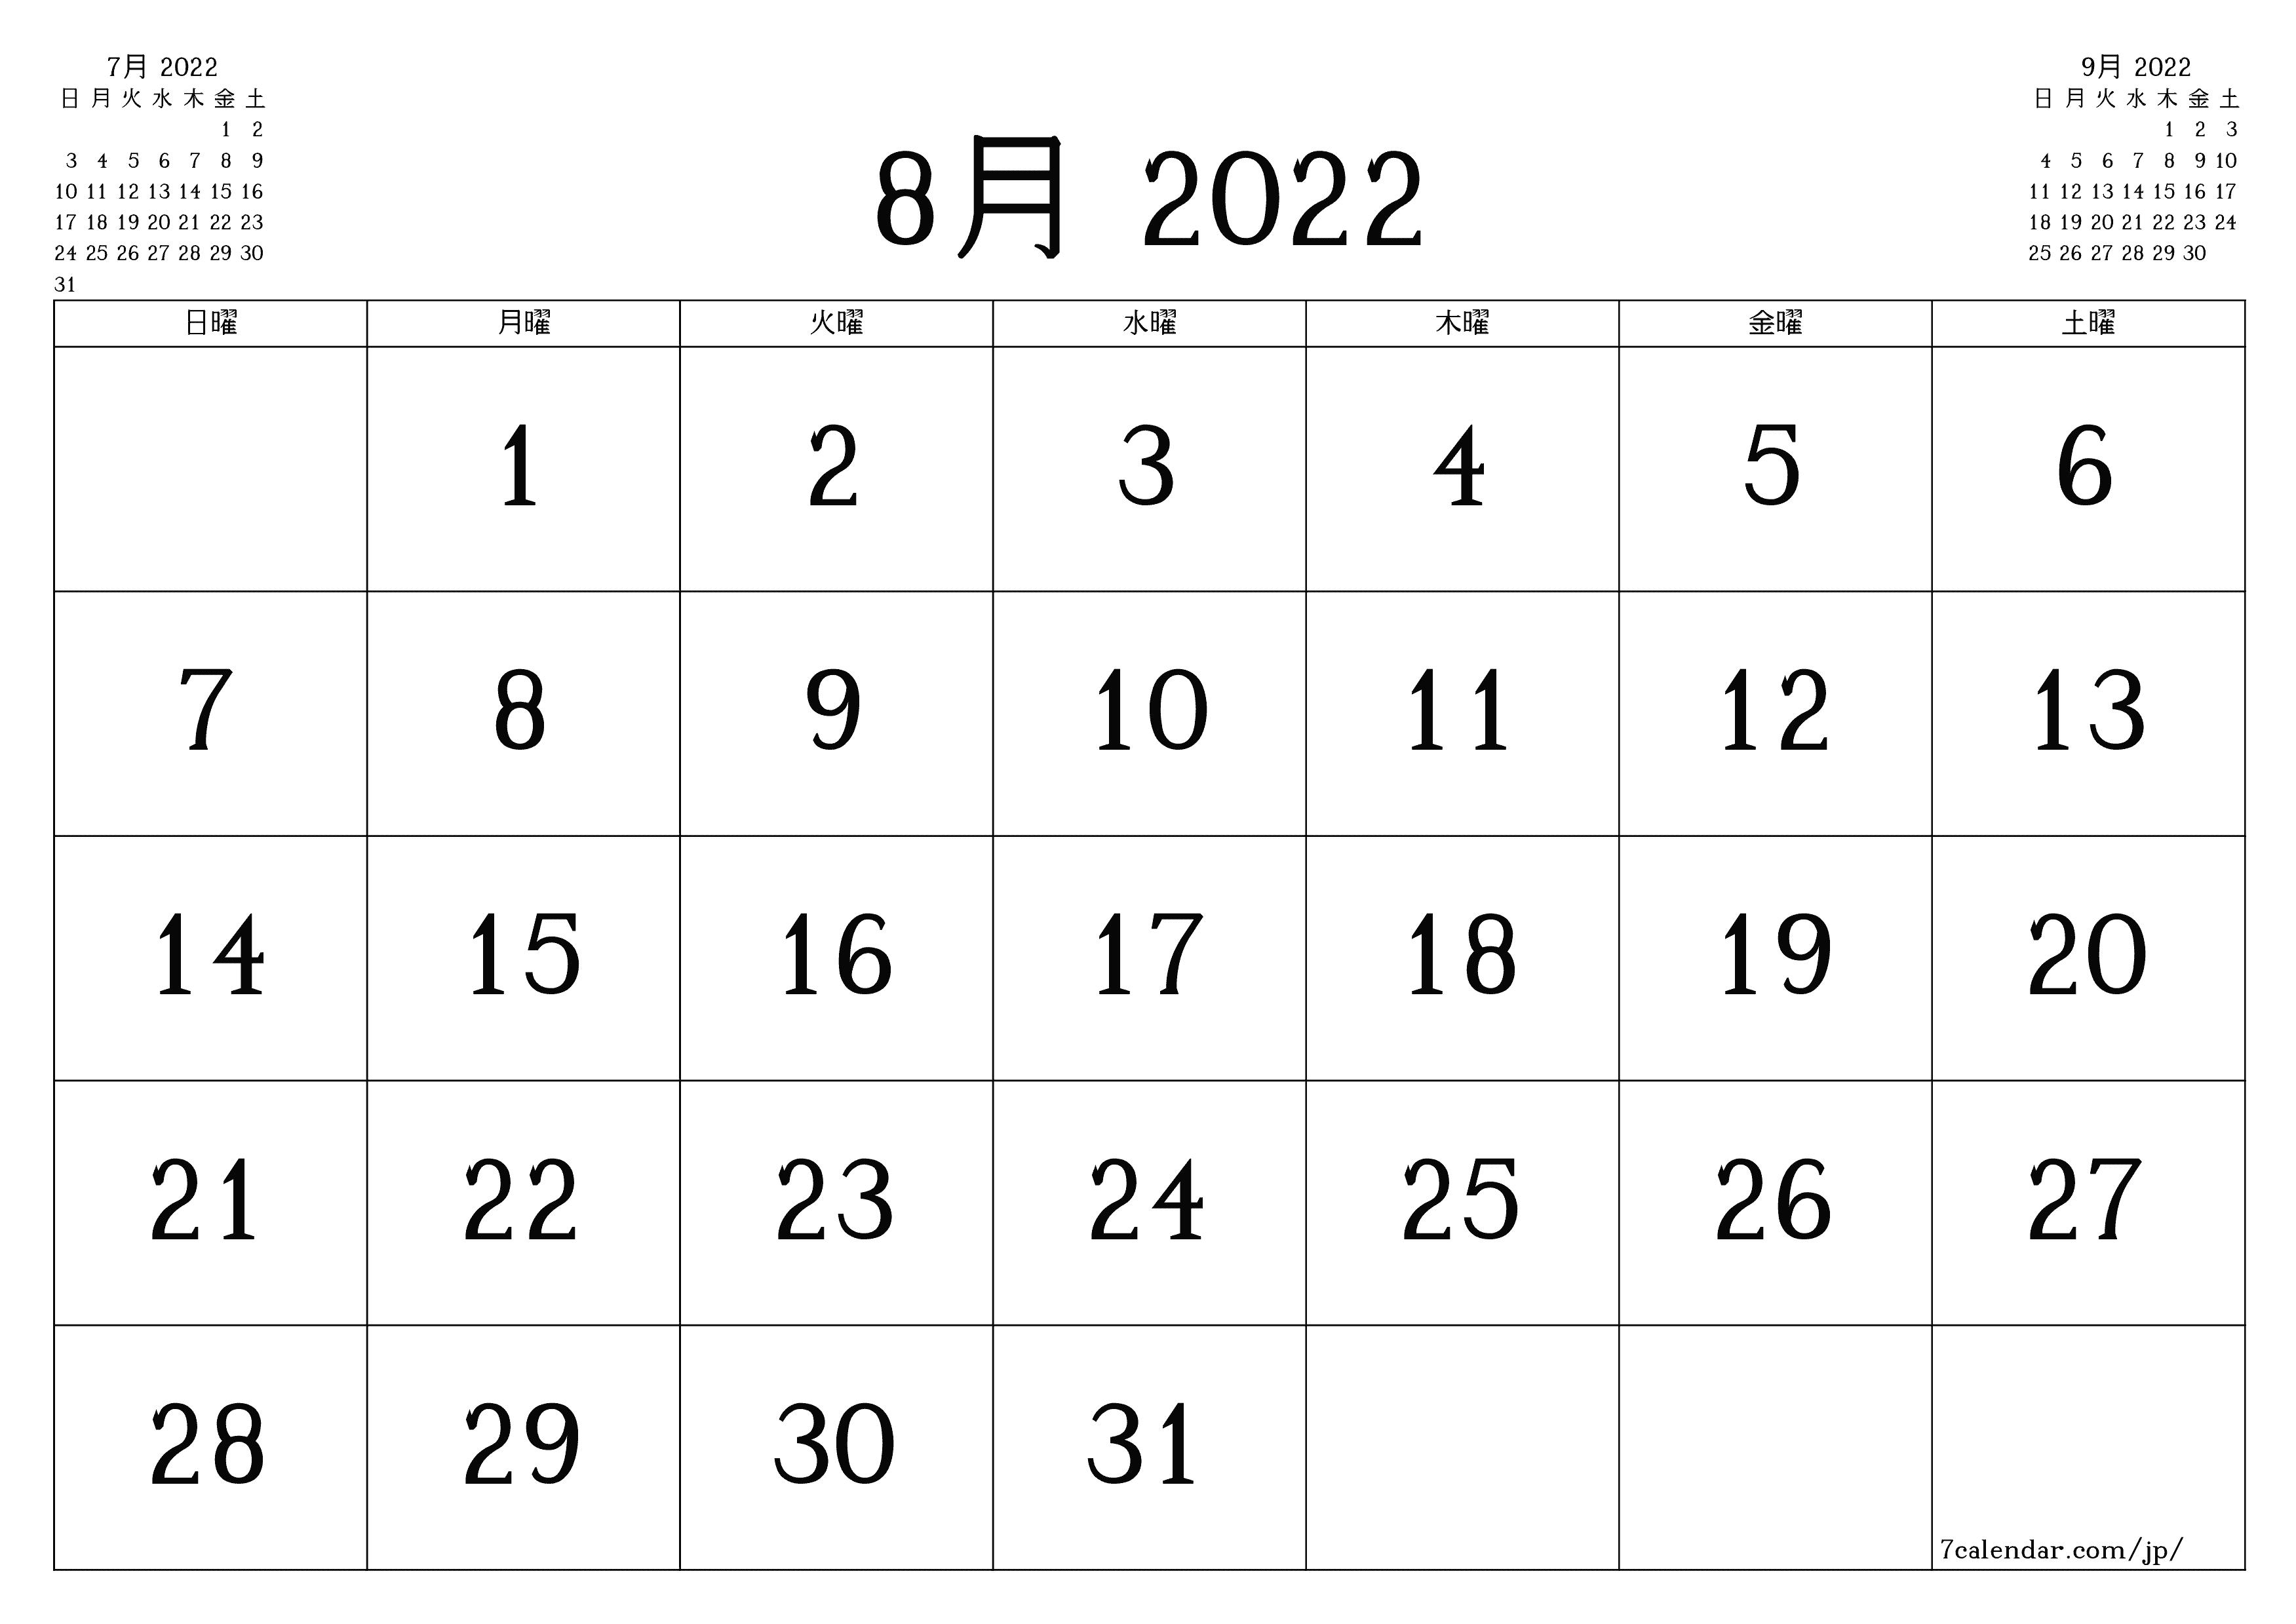 月の空白の月間カレンダー8月2022保存してPDFに印刷PNG Japanese - 7calendar.com